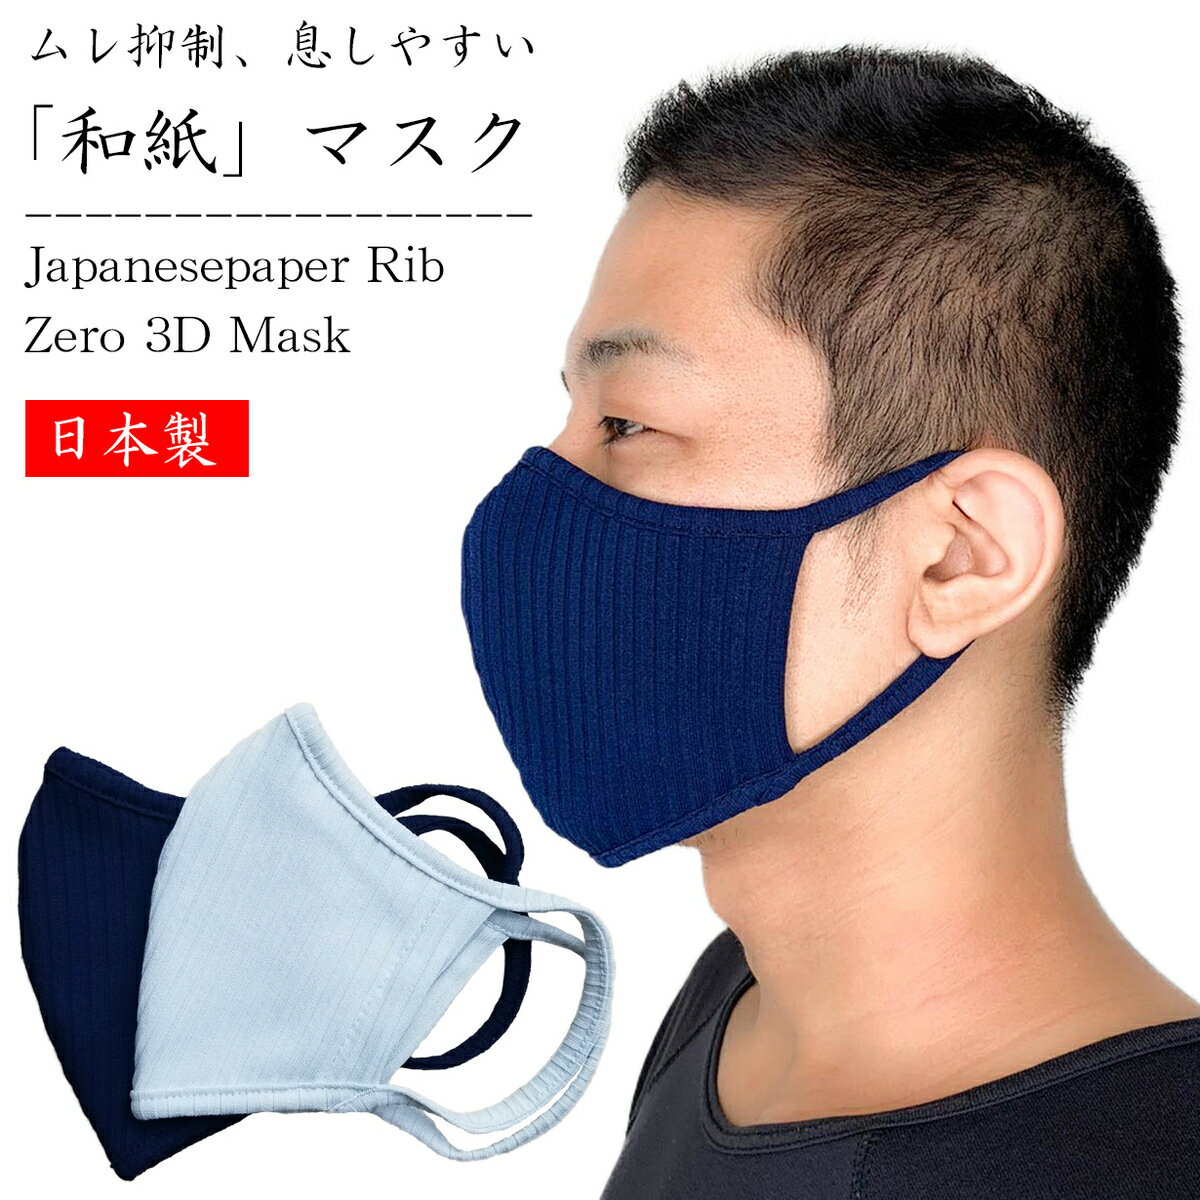 和紙ストライプリブ立体マスク zero 日本製 アイスグレー ブルー 2重(1枚） 布マスク 大人 メンズ レディース ファッション 送料無料 吸汗速乾 快適 クール 涼感 さらさら ムレにくい 布 伸縮性 予防 対策 ブロック 洗える 調湿性 おしゃれ 涼しい 蒸れない 洗えるマスク